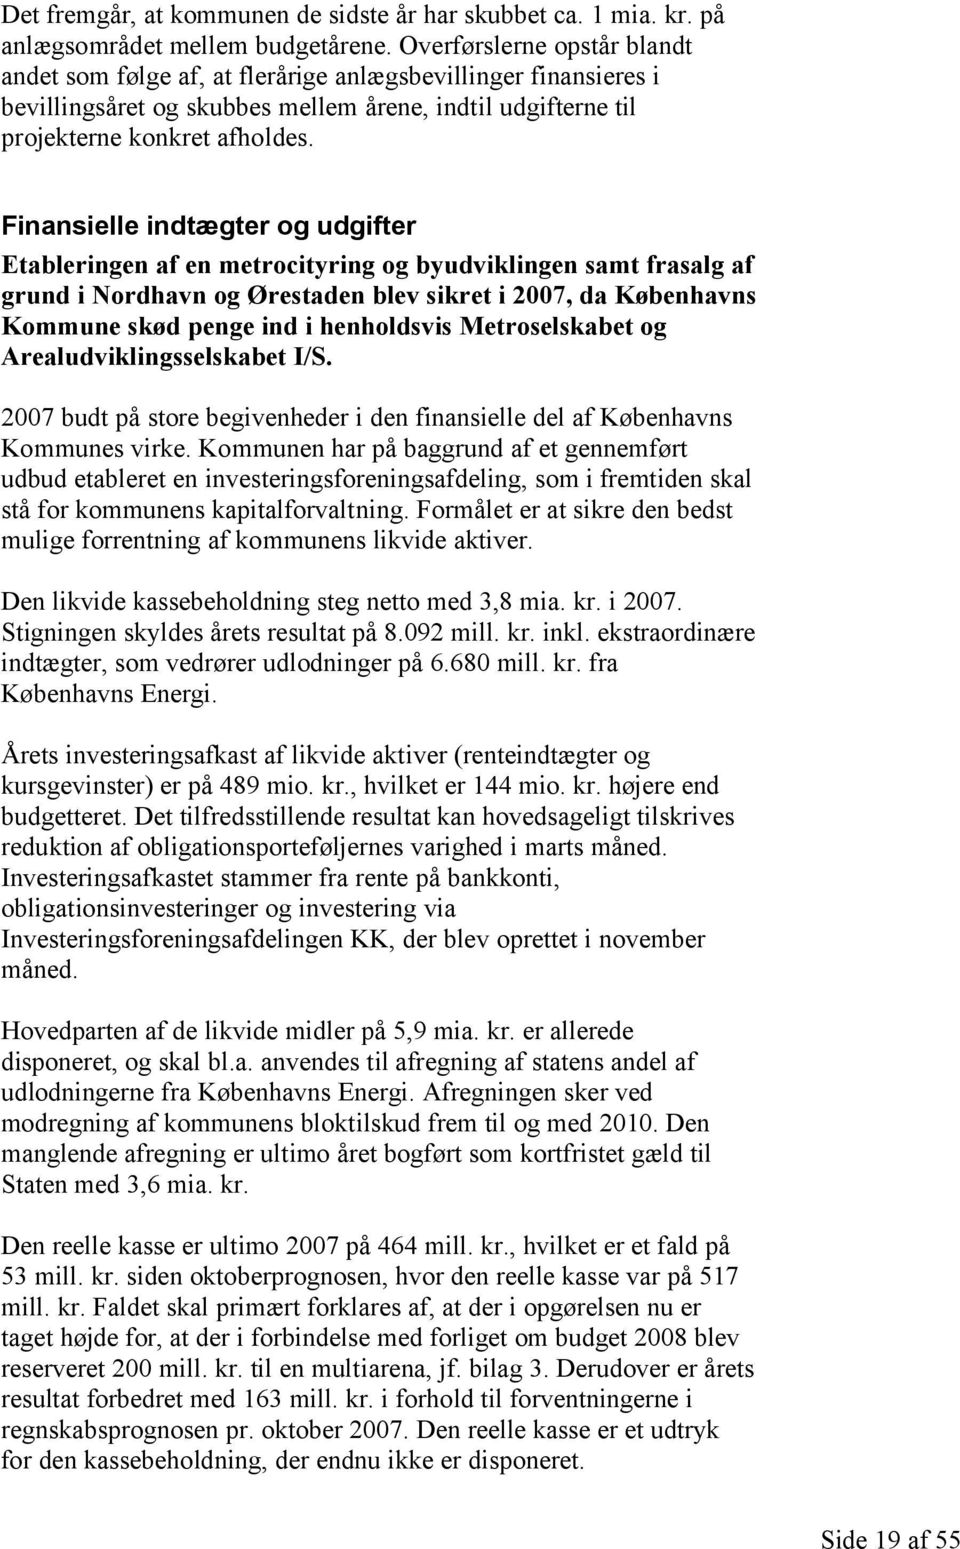 Finansielle indtægter og udgifter Etableringen af en metrocityring og byudviklingen samt frasalg af grund i Nordhavn og Ørestaden blev sikret i 2007, da Københavns Kommune skød penge ind i